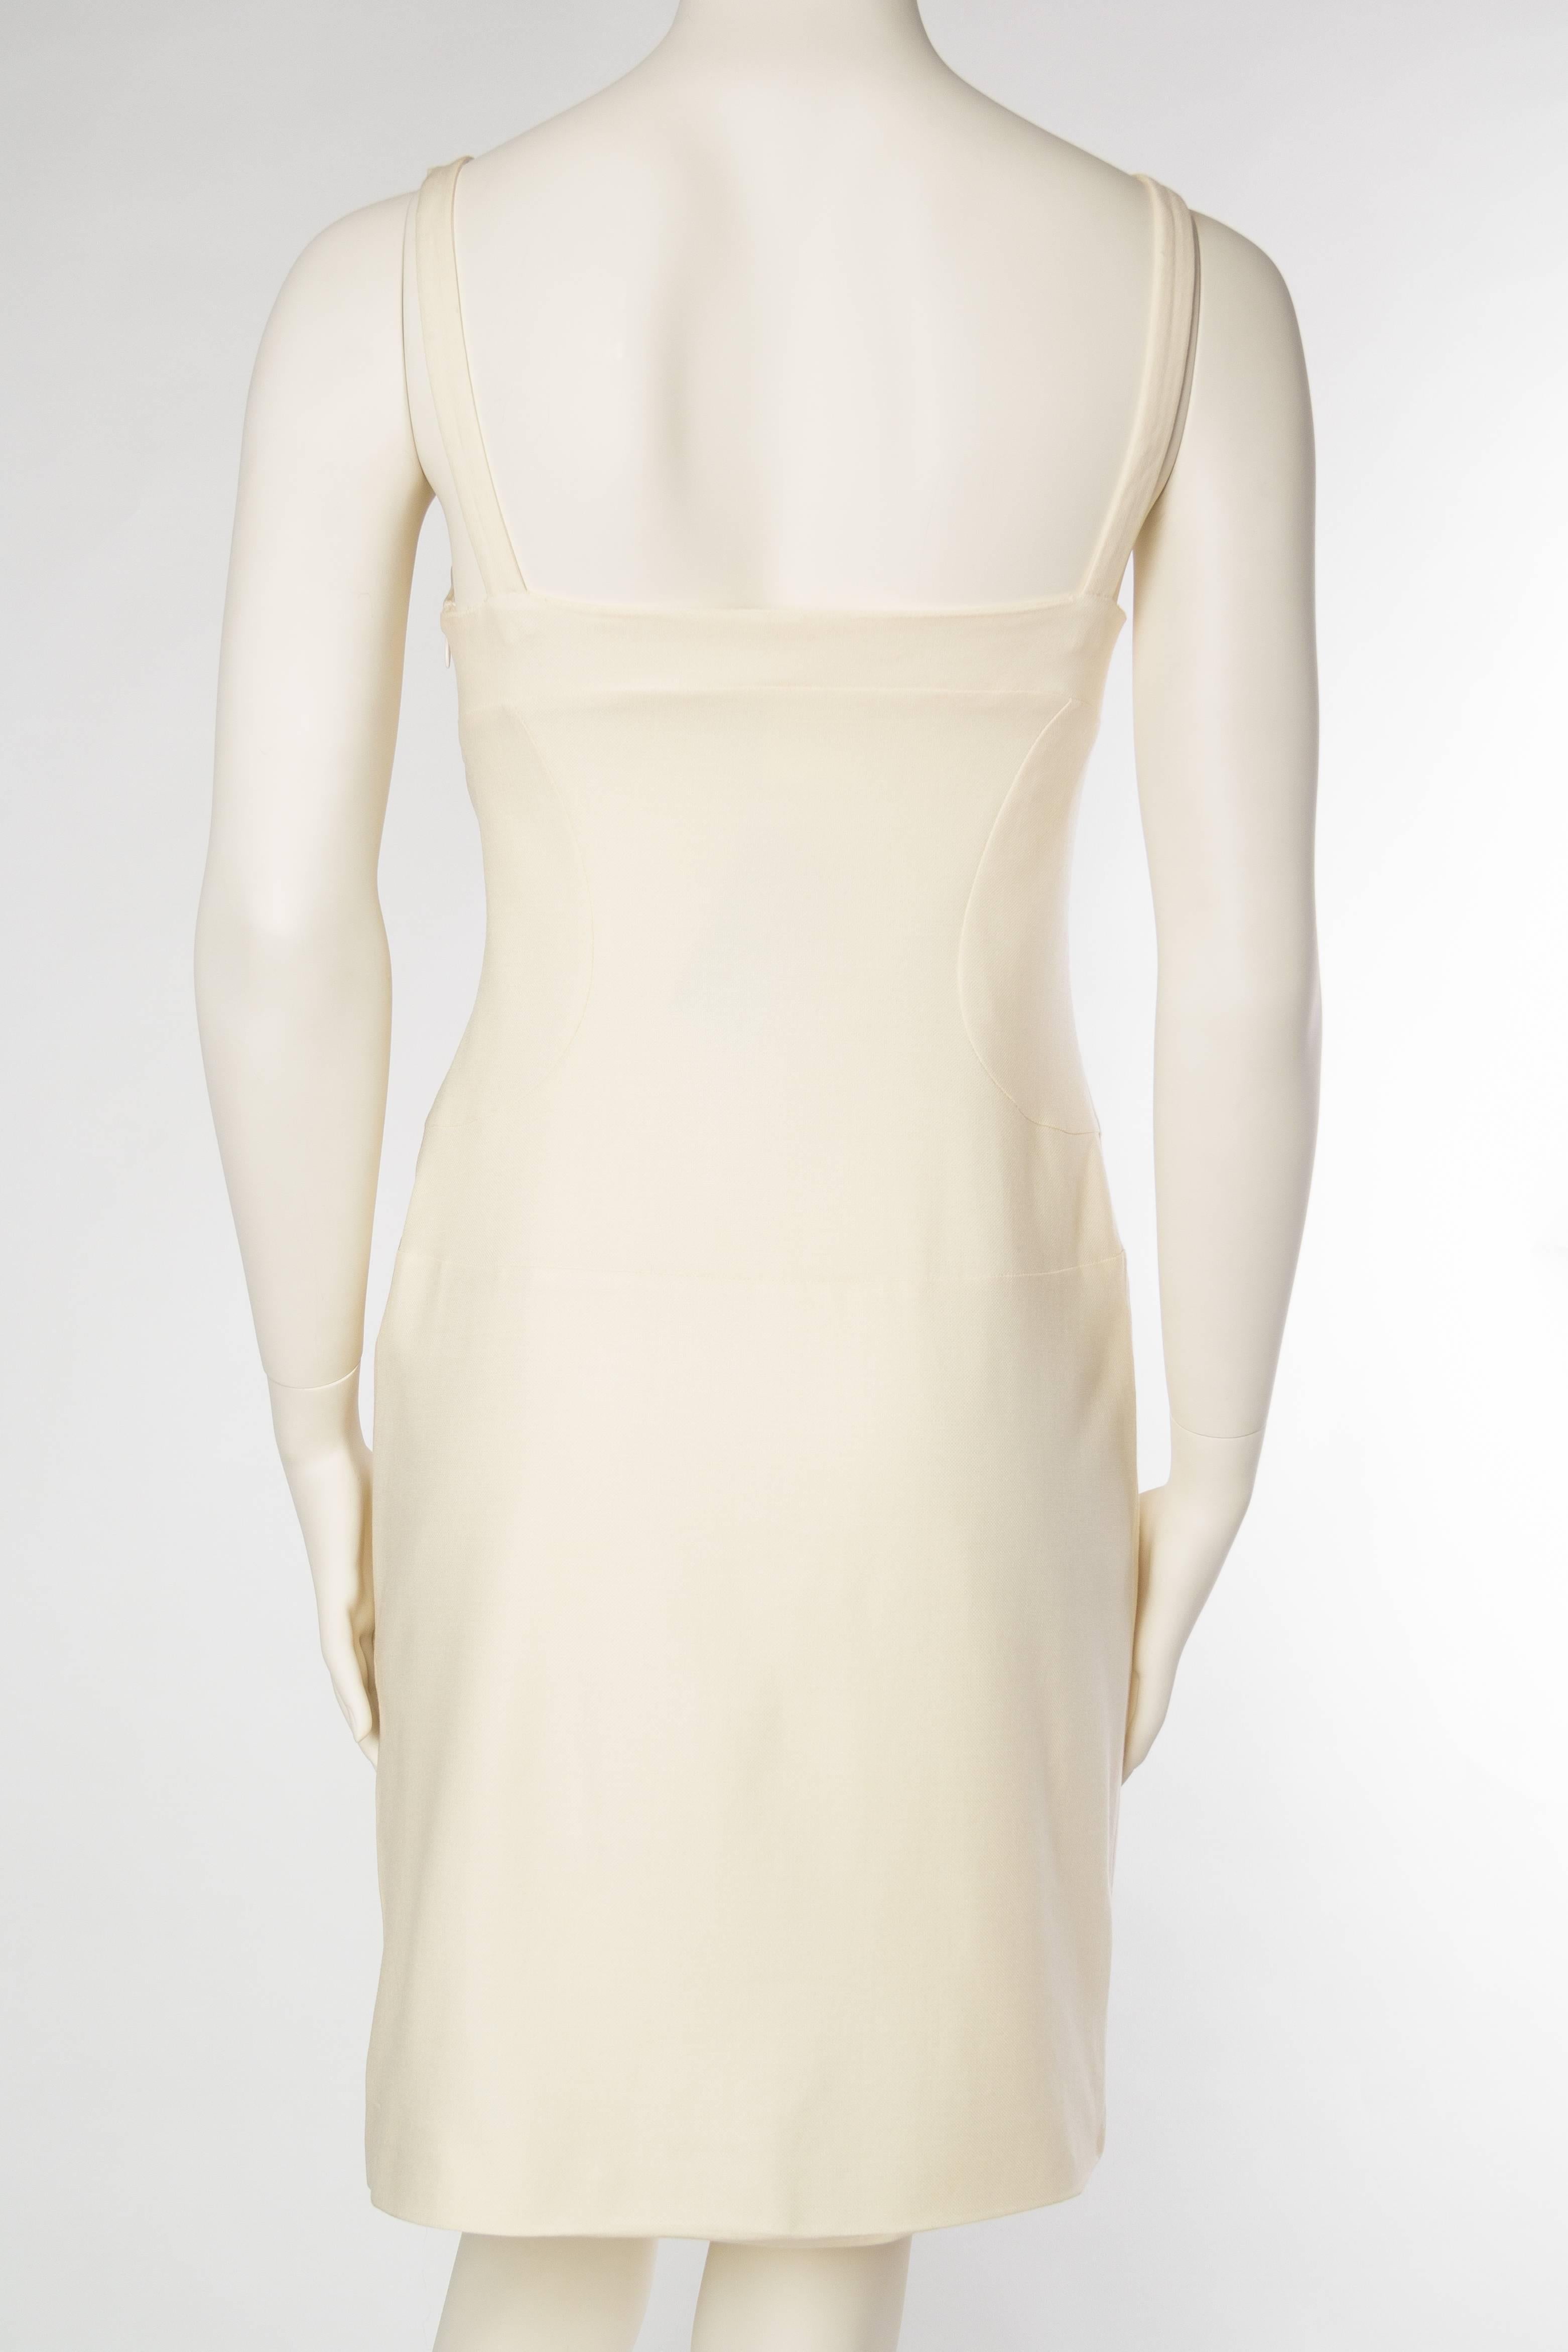 Gianni Versace Versus Stretch Cream Underwire Dress with Slit 1